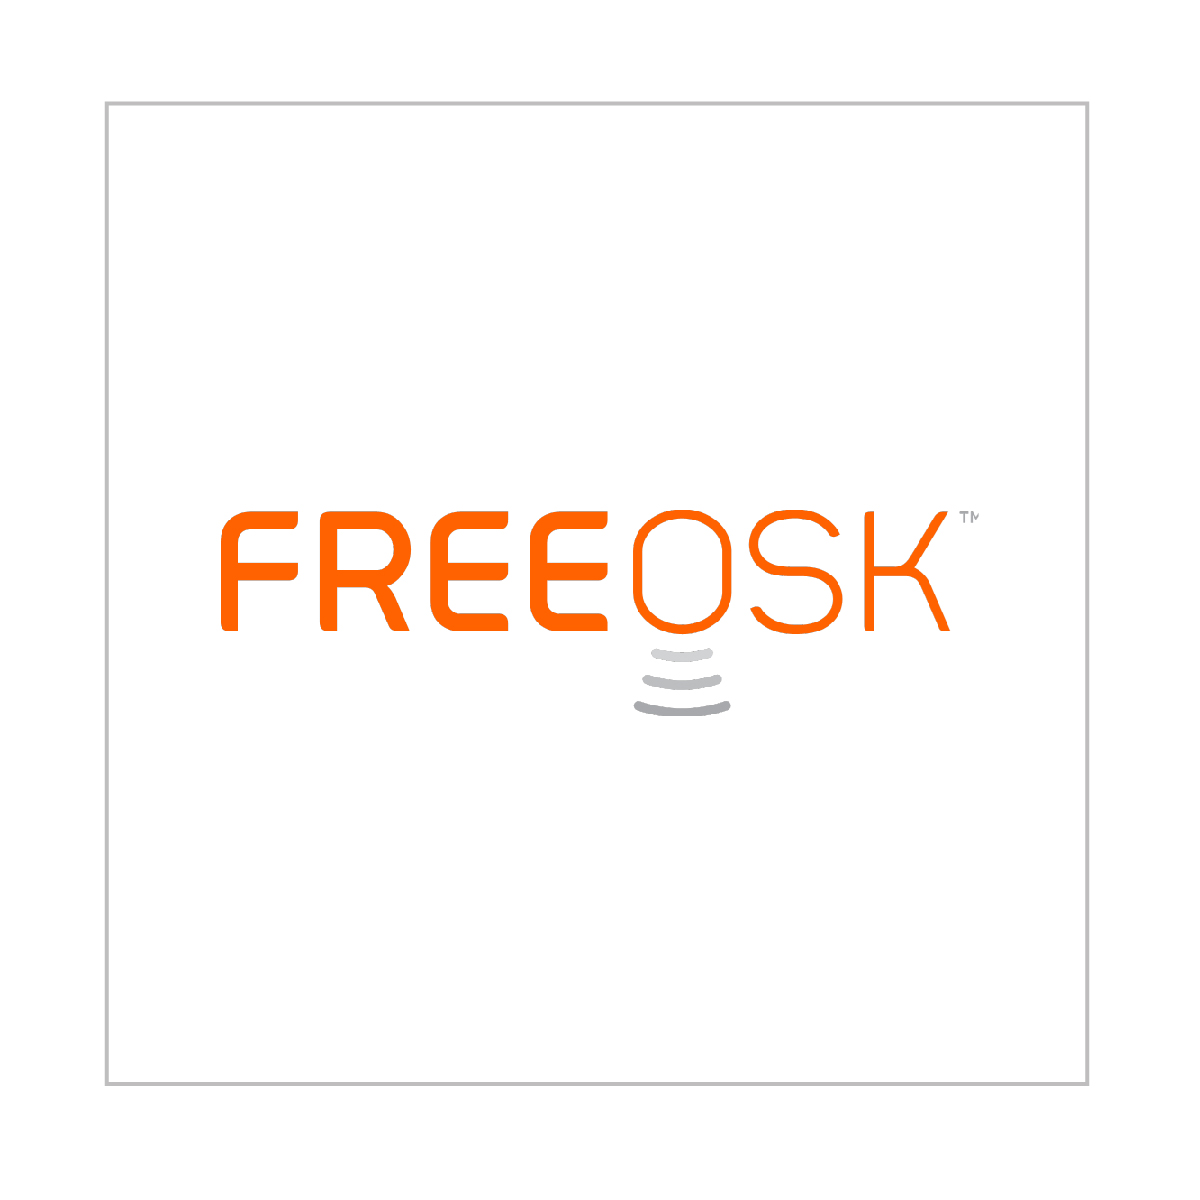 freeosk_logo.jpg